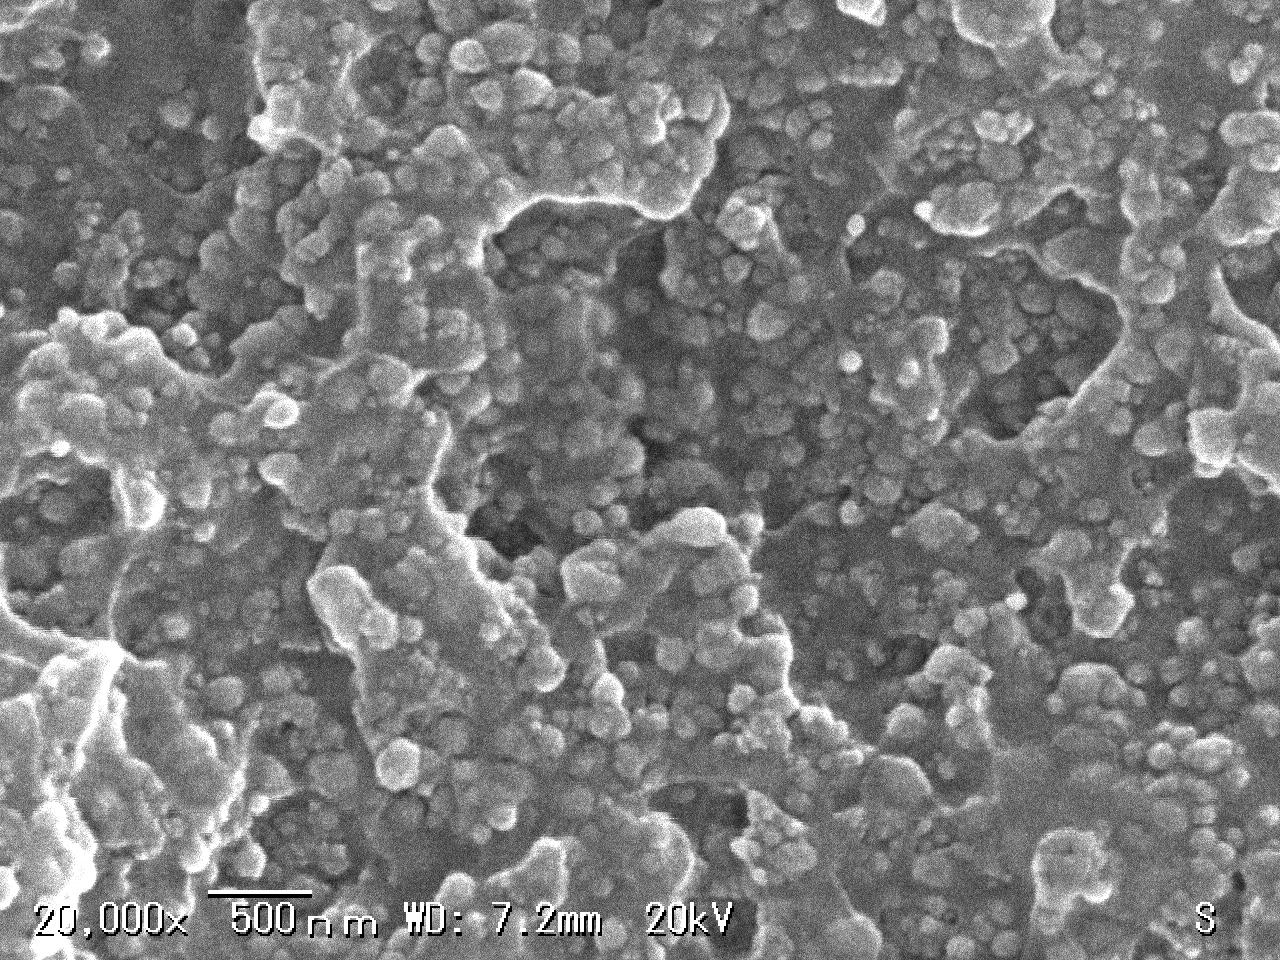 Nano silica particle-filled epoxy composite